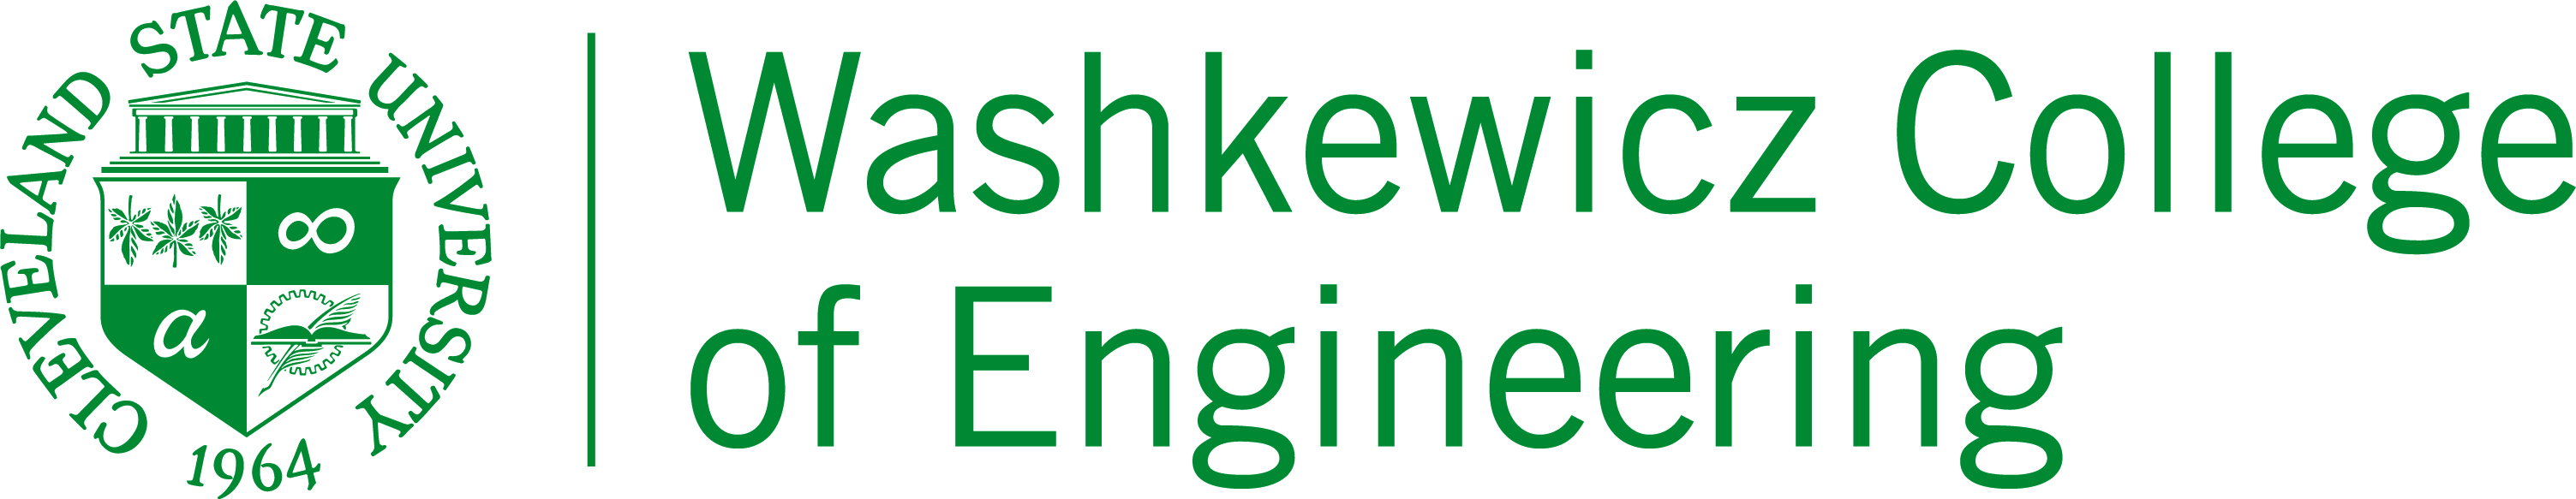 CSU Engineering Logo